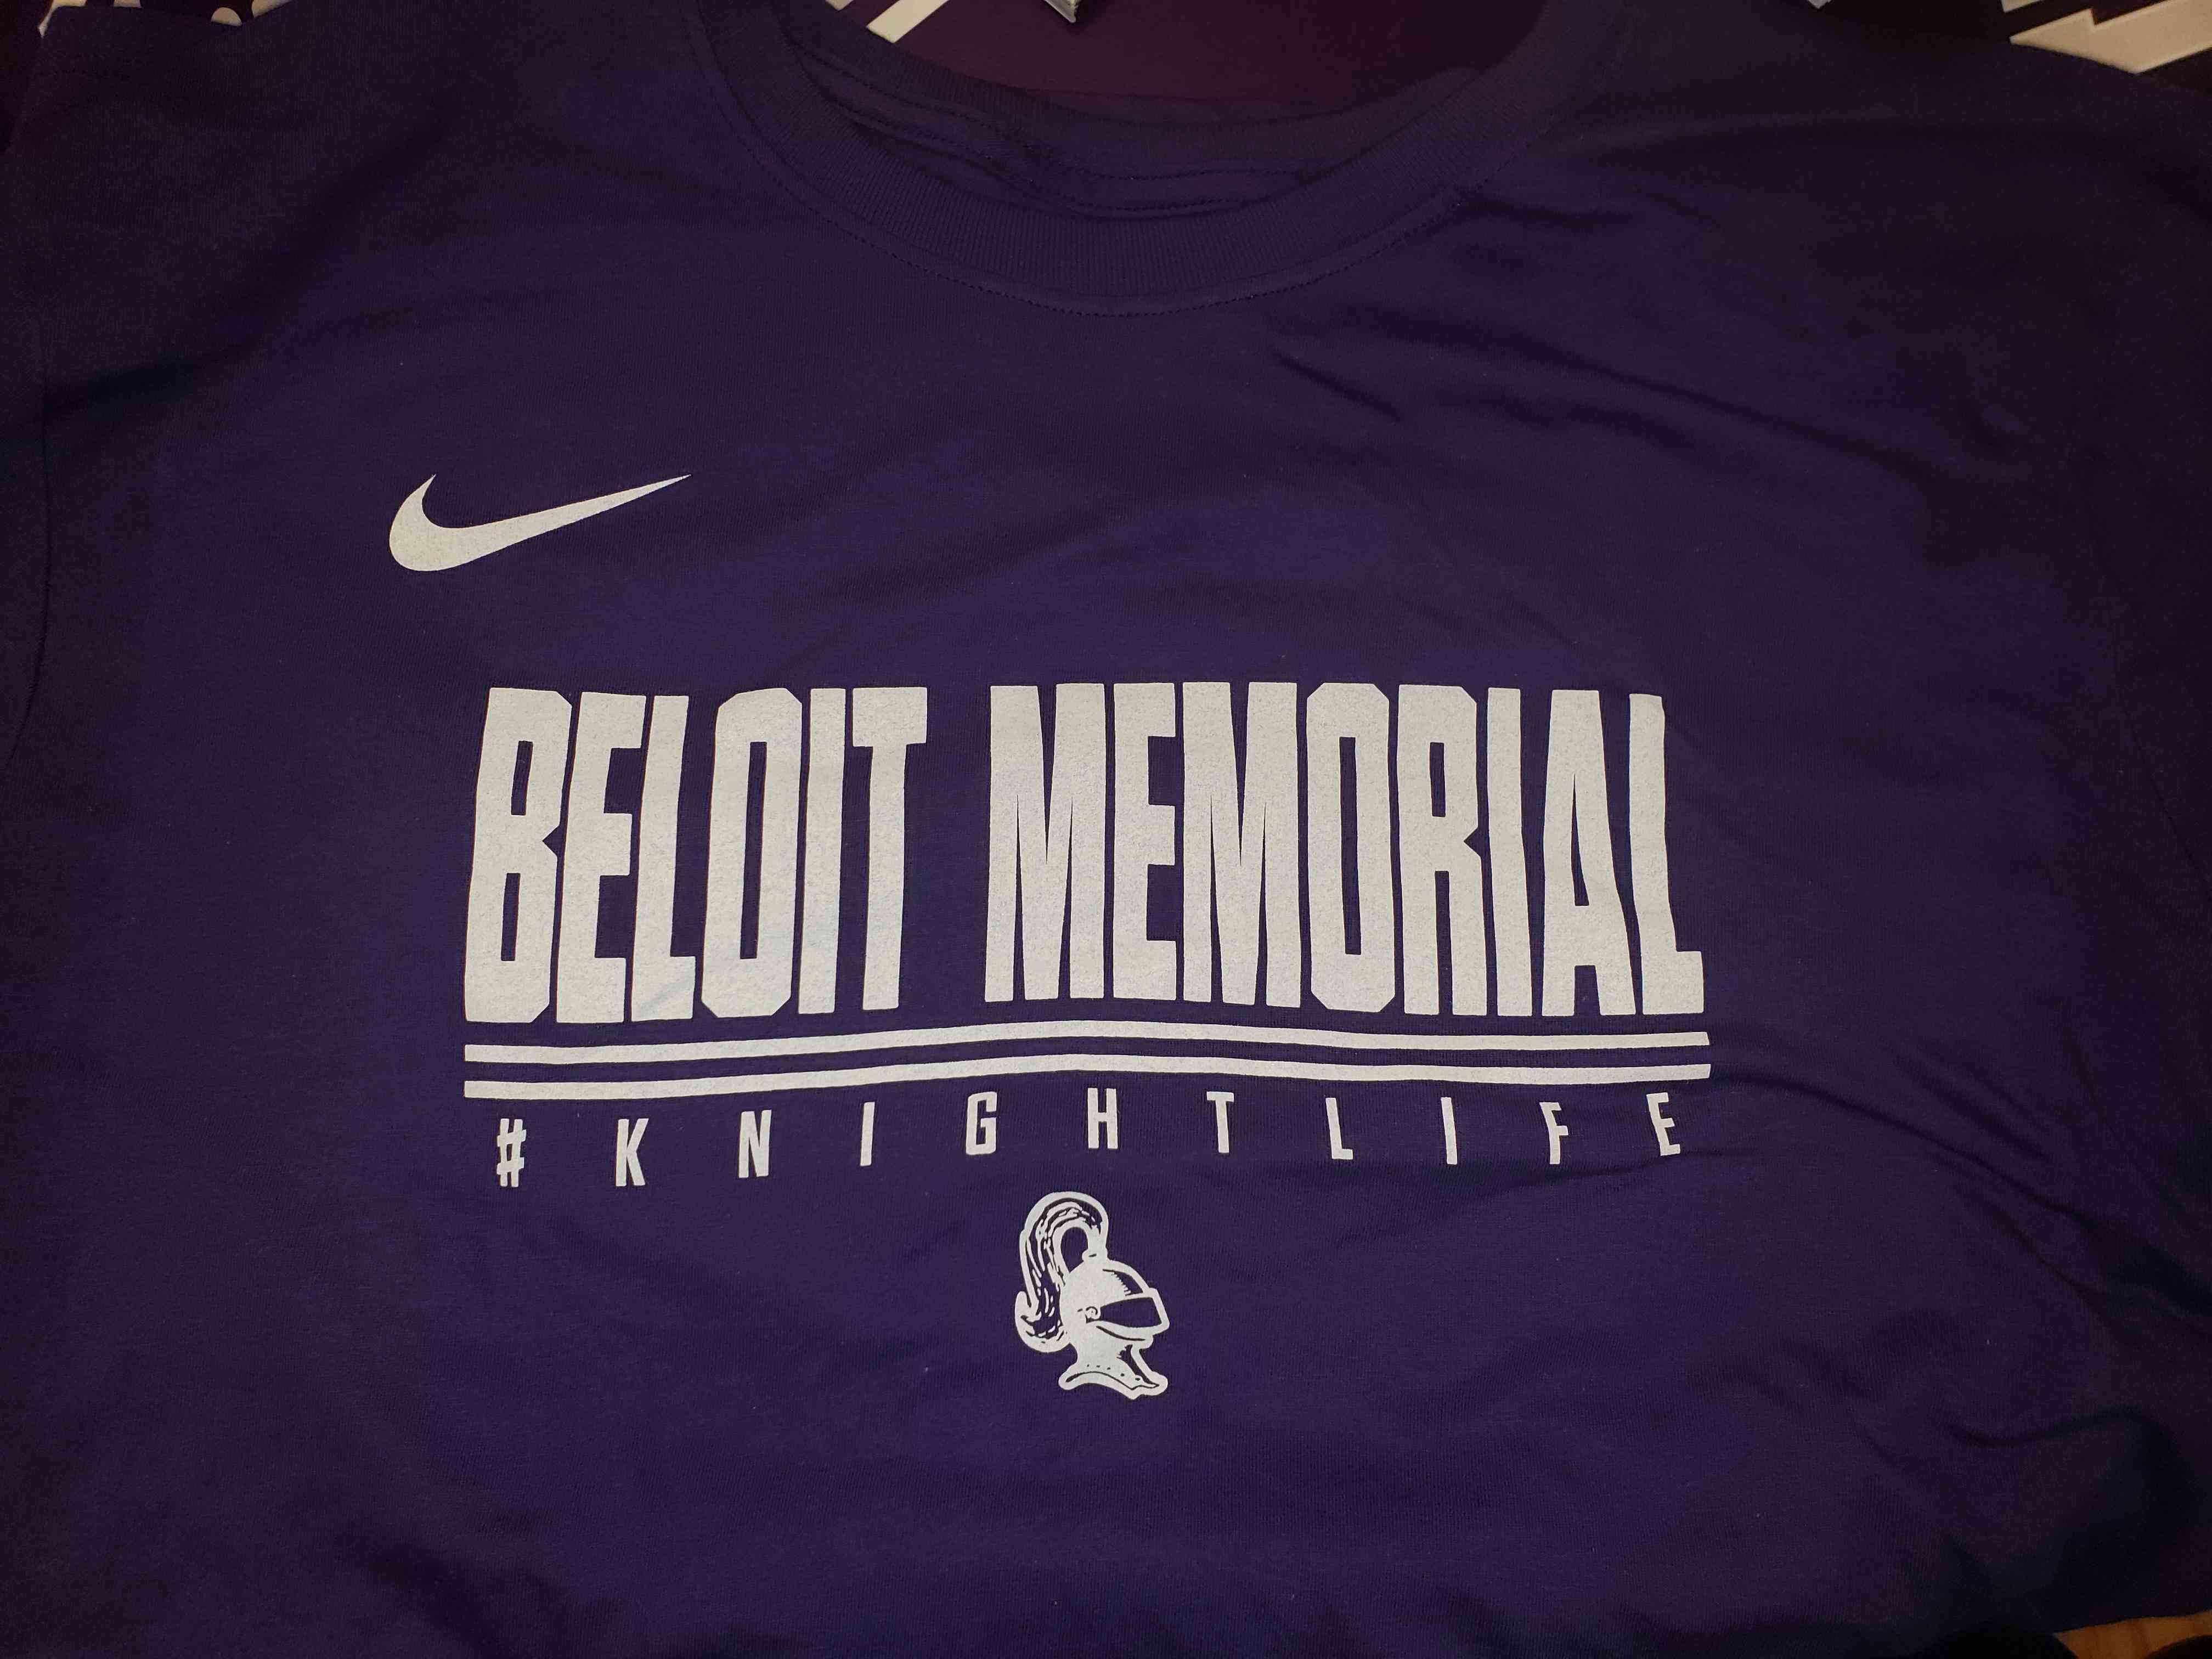 Beloit Memorial Nike T-Shirt Image